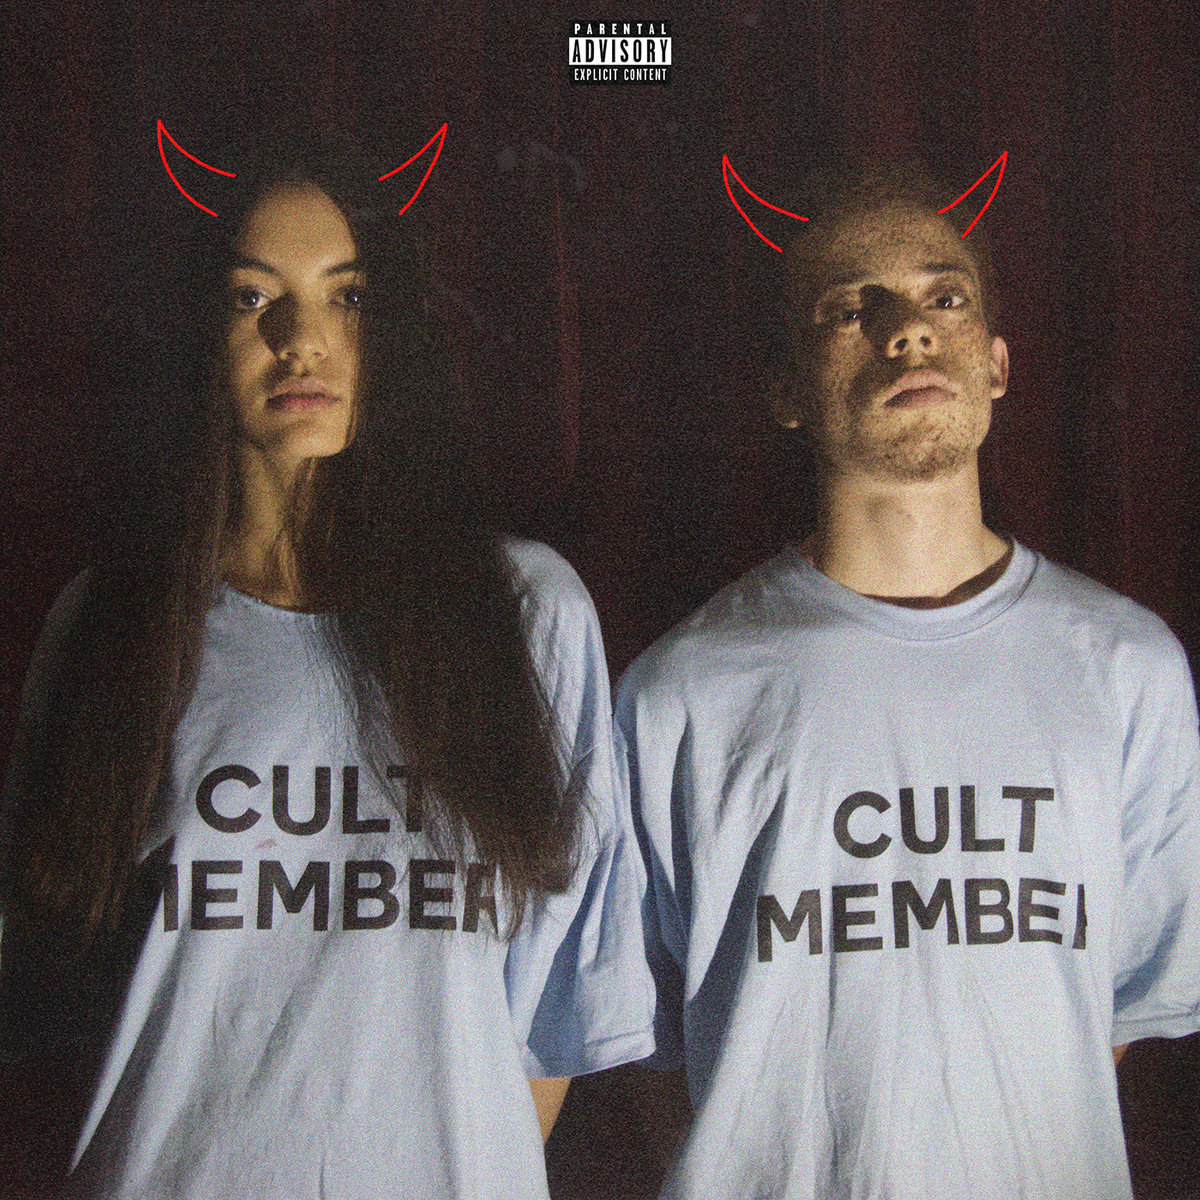 Cult_member